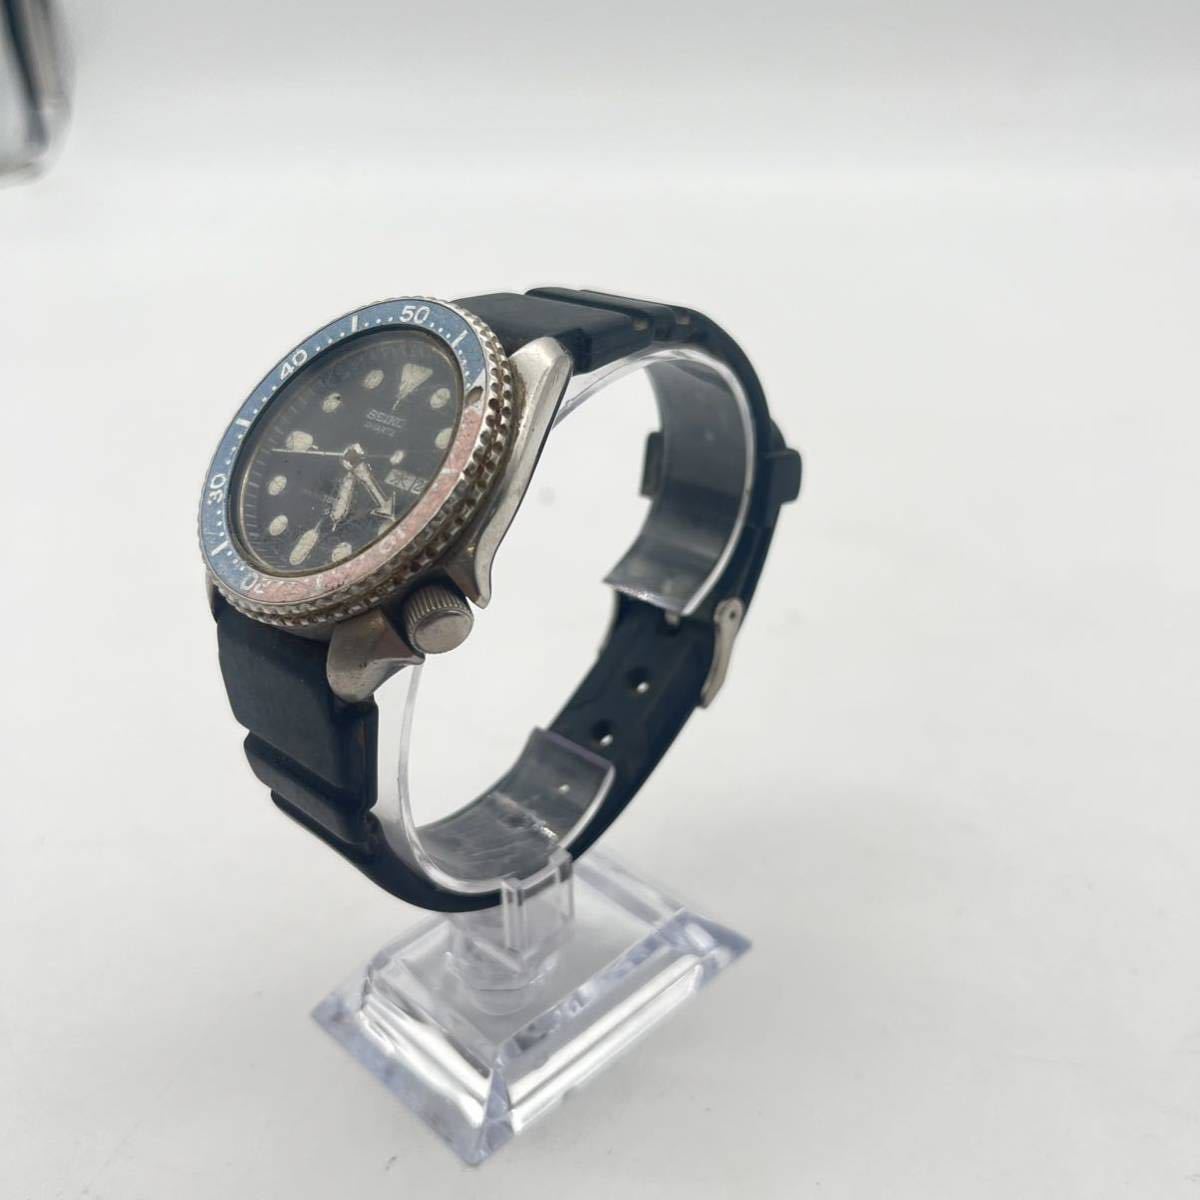 曽我部 12月 No.10 可動品 腕時計 SEIKO セイコー 7548-700B ブラック系 メンズ腕時計 デイデイト クオーツ ブランド_画像4